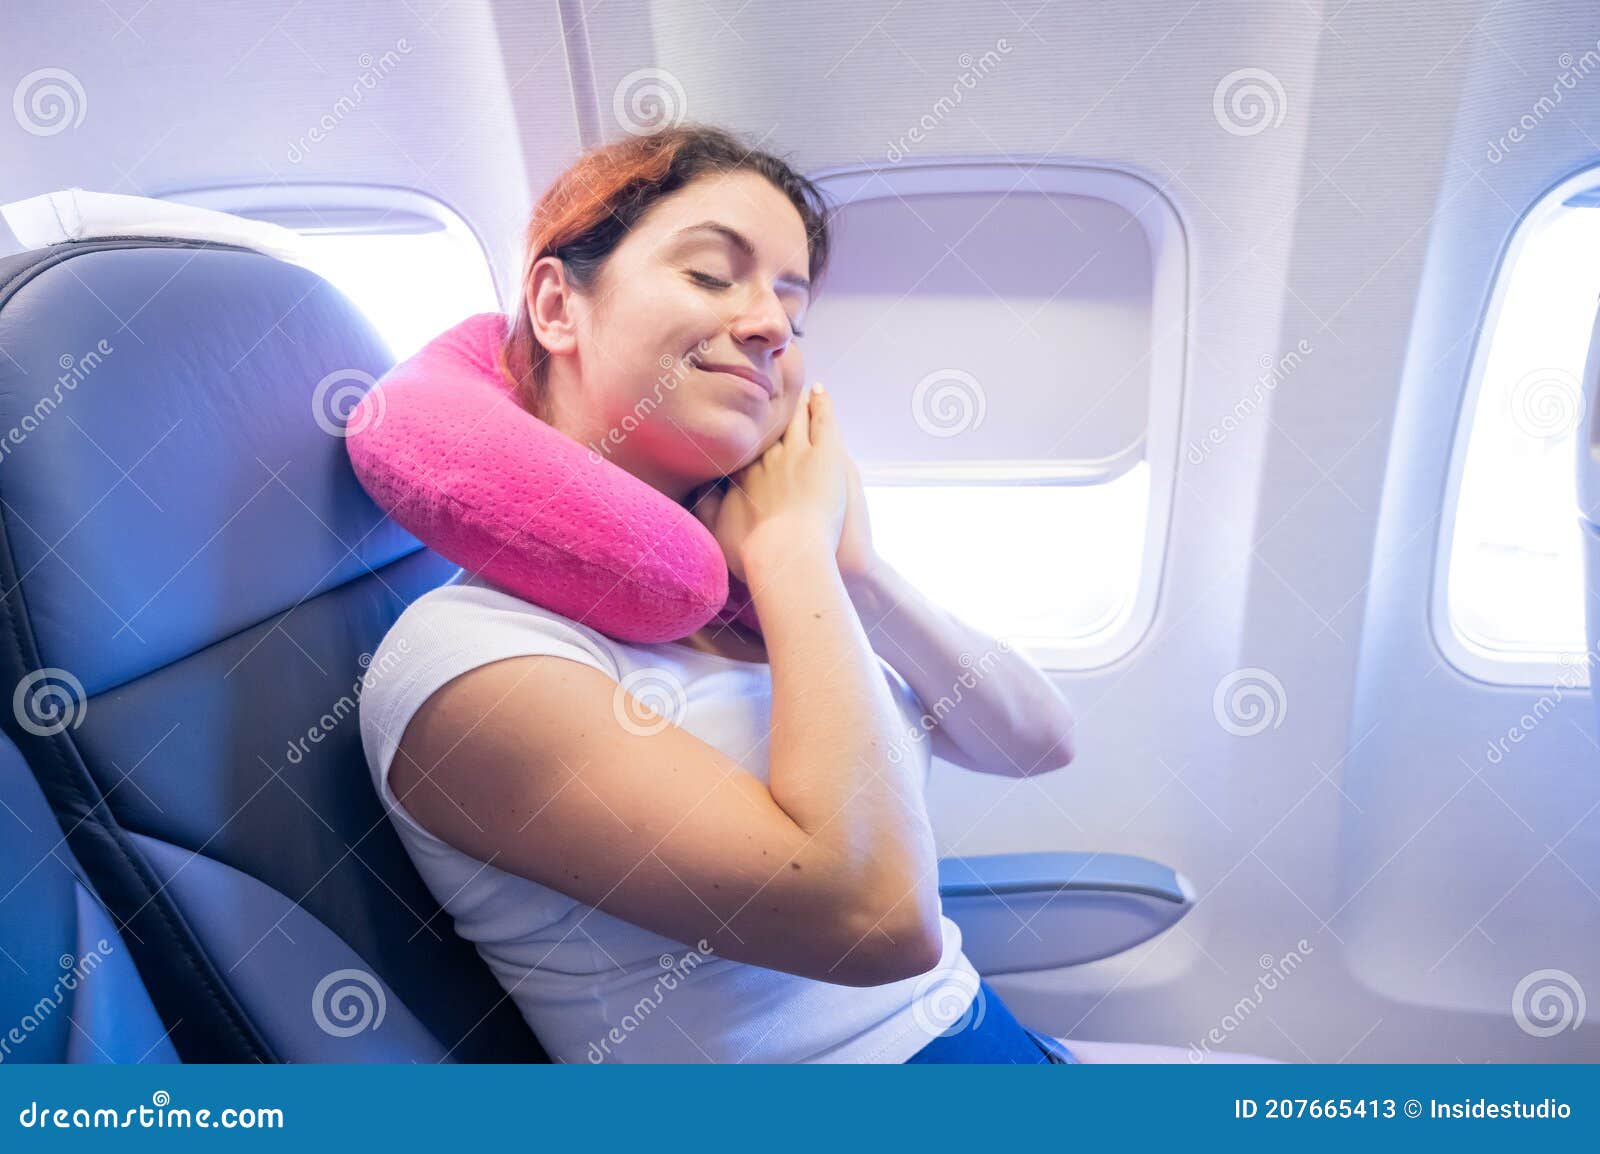 Retrato De Una Joven Caucásica En Un Avión Con Una Almohada De Viaje  Alrededor De Su Cuello Imagen de archivo - Imagen de interior, ocio:  207665413